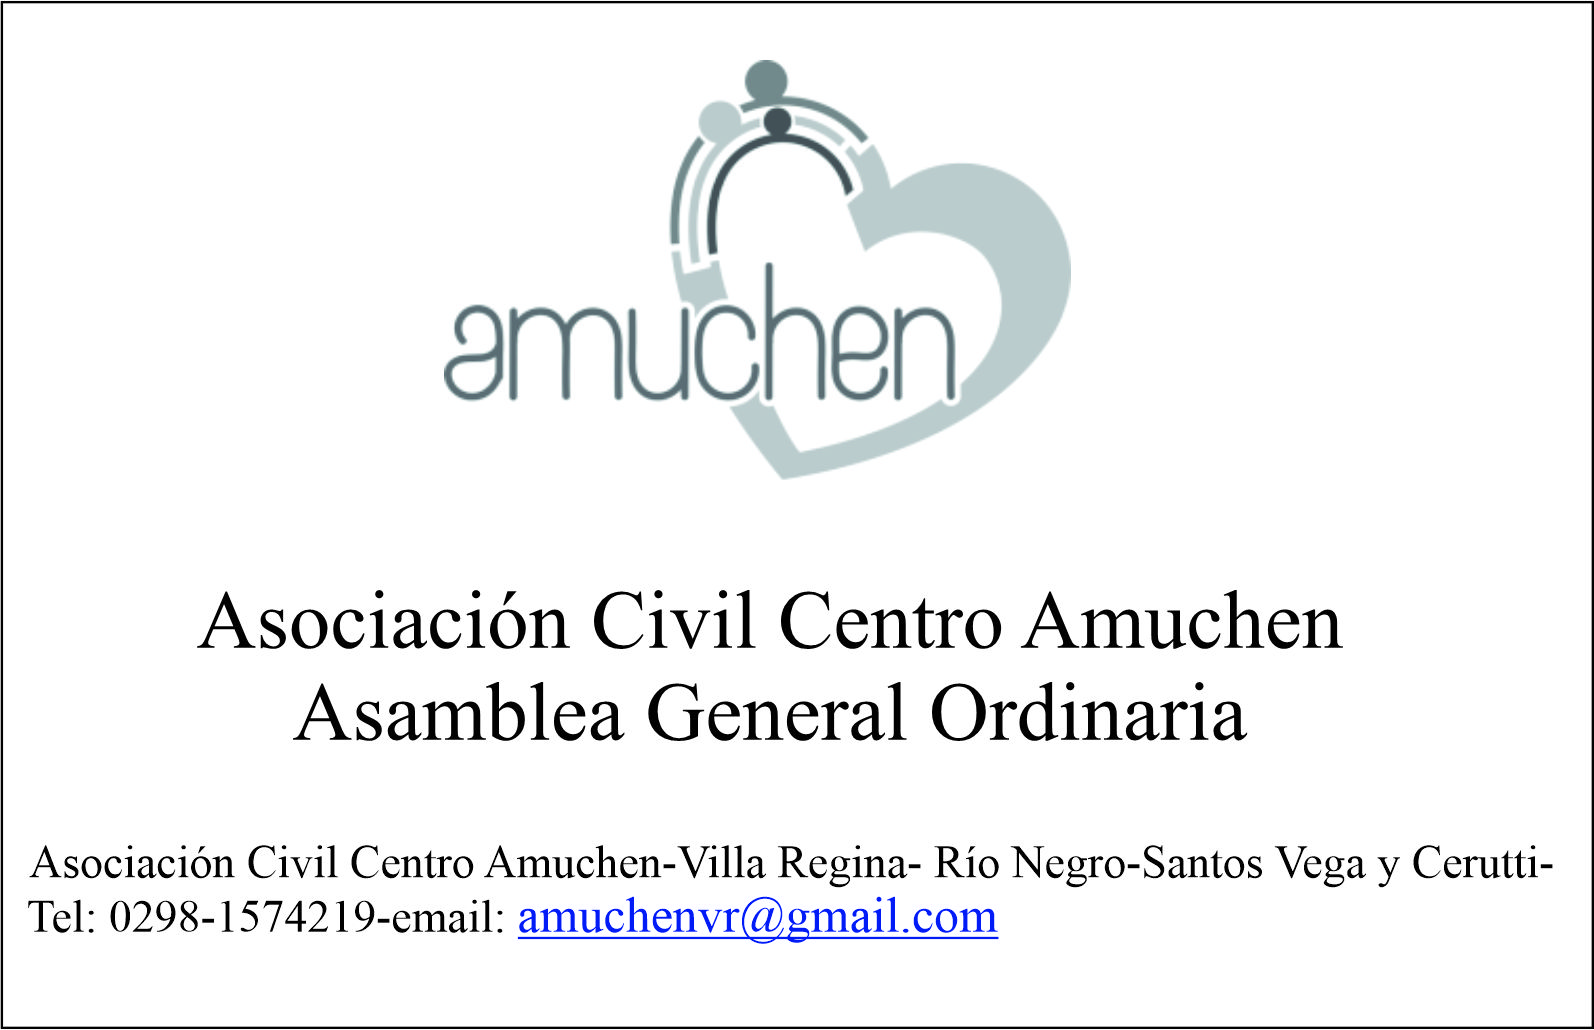 Asociación Civil Centro Amuchen: Asamblea General Ordinaria (fuera de término)